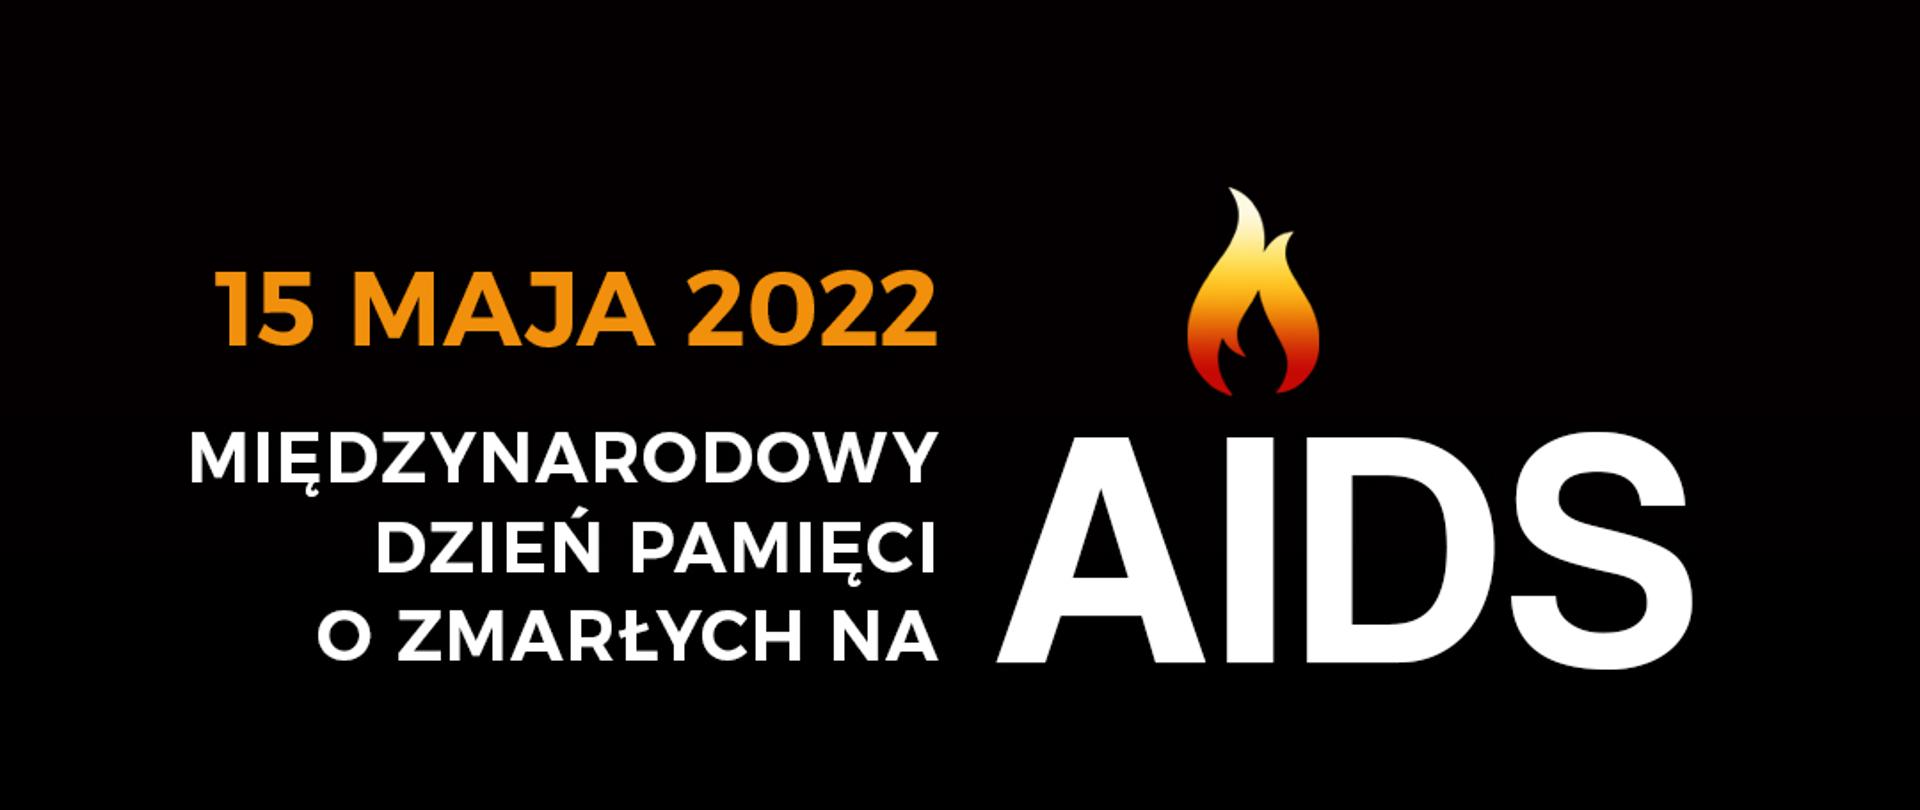 Czarny baner z napisem 15 maja 2022 - Międzynarodowy Dzień Pamięci o Zmarłych na AIDS. Poniżej zapalone świeczki